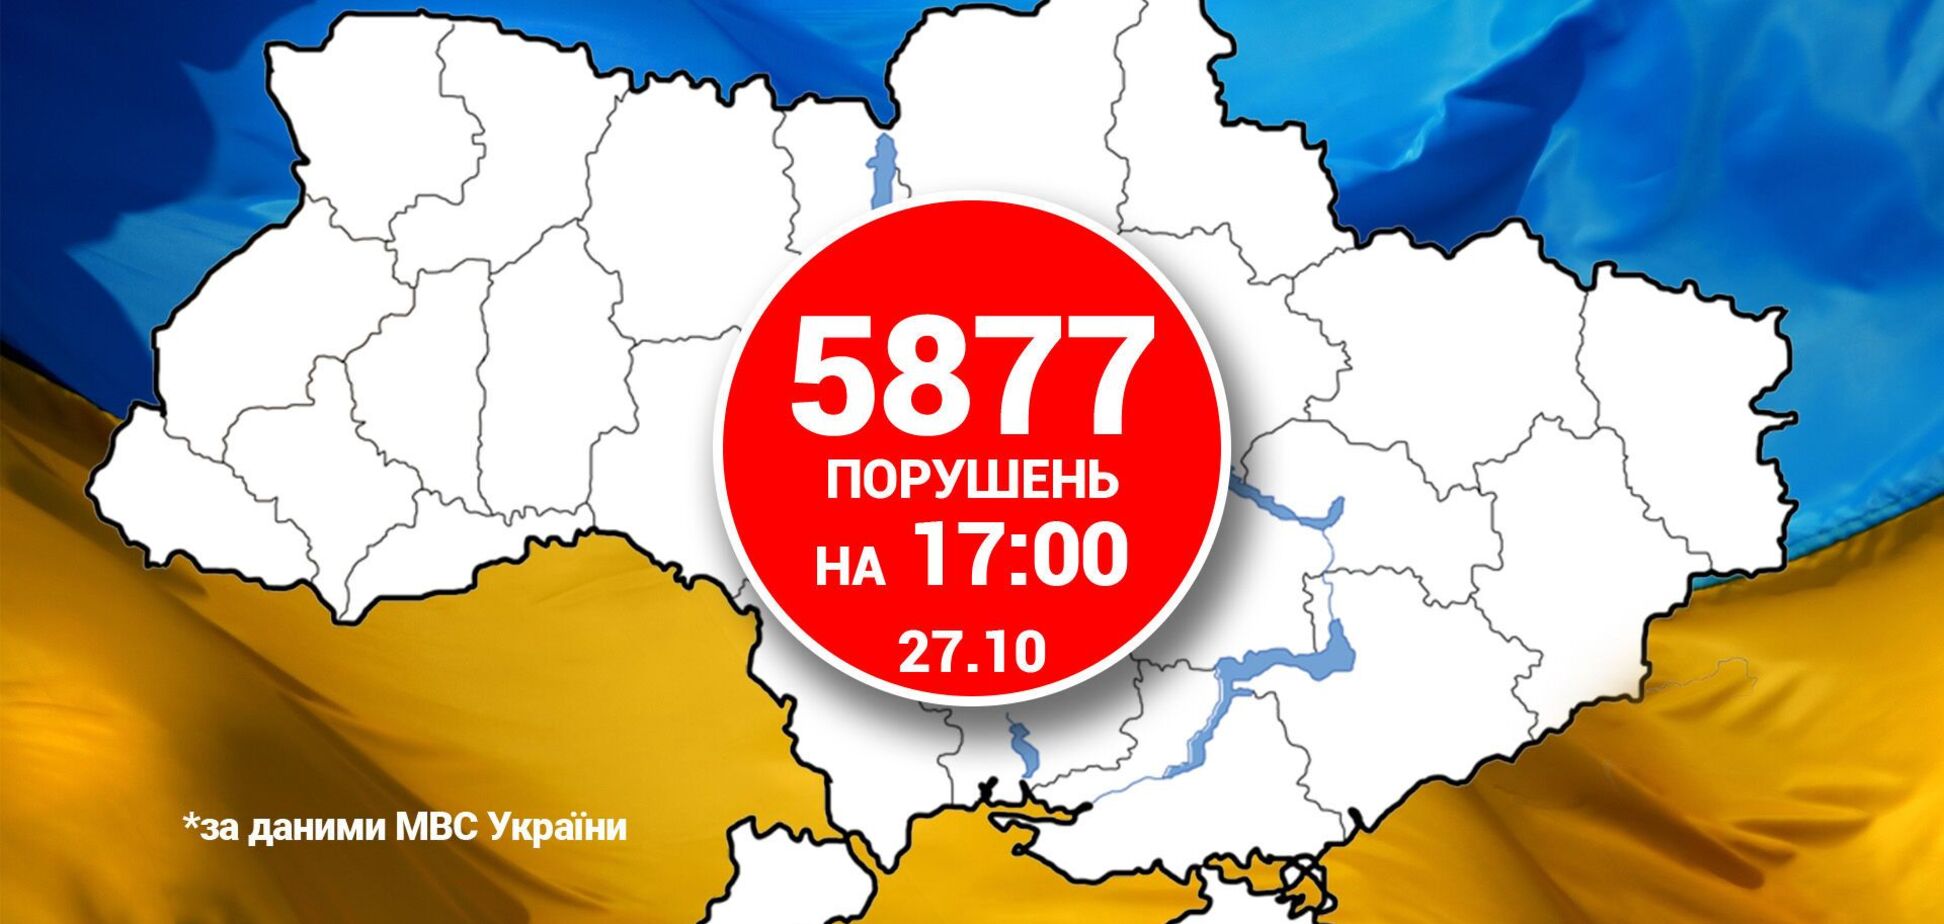 Нарушения на местных выборах в Украине: что происходило на избирательных участках. Фото и видео